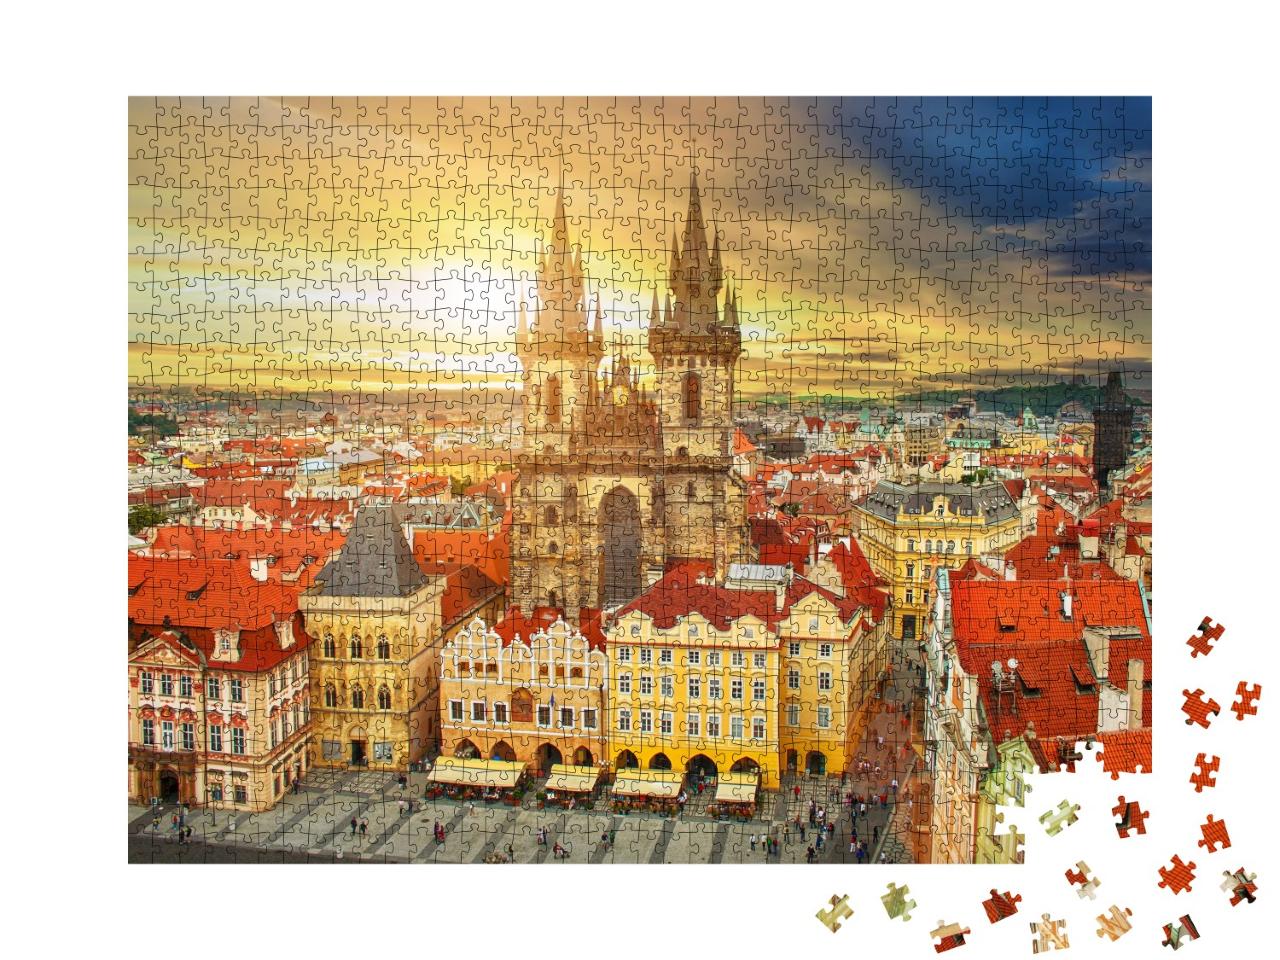 Puzzle de 1000 pièces « Place de la vieille ville de Prague République tchèque »